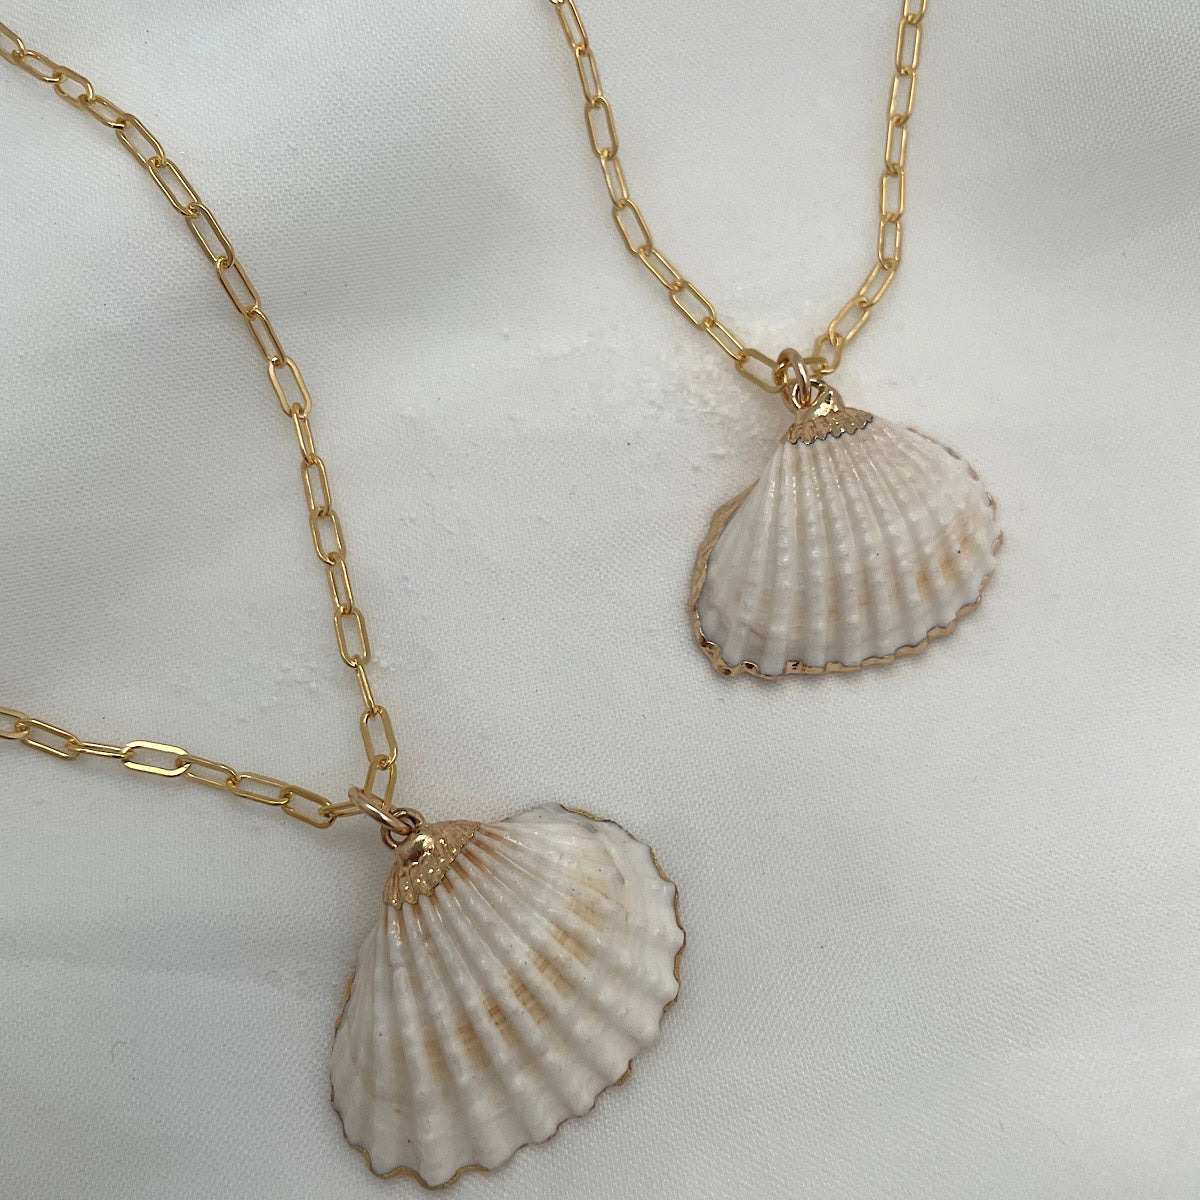 She Sells Seashells Necklace